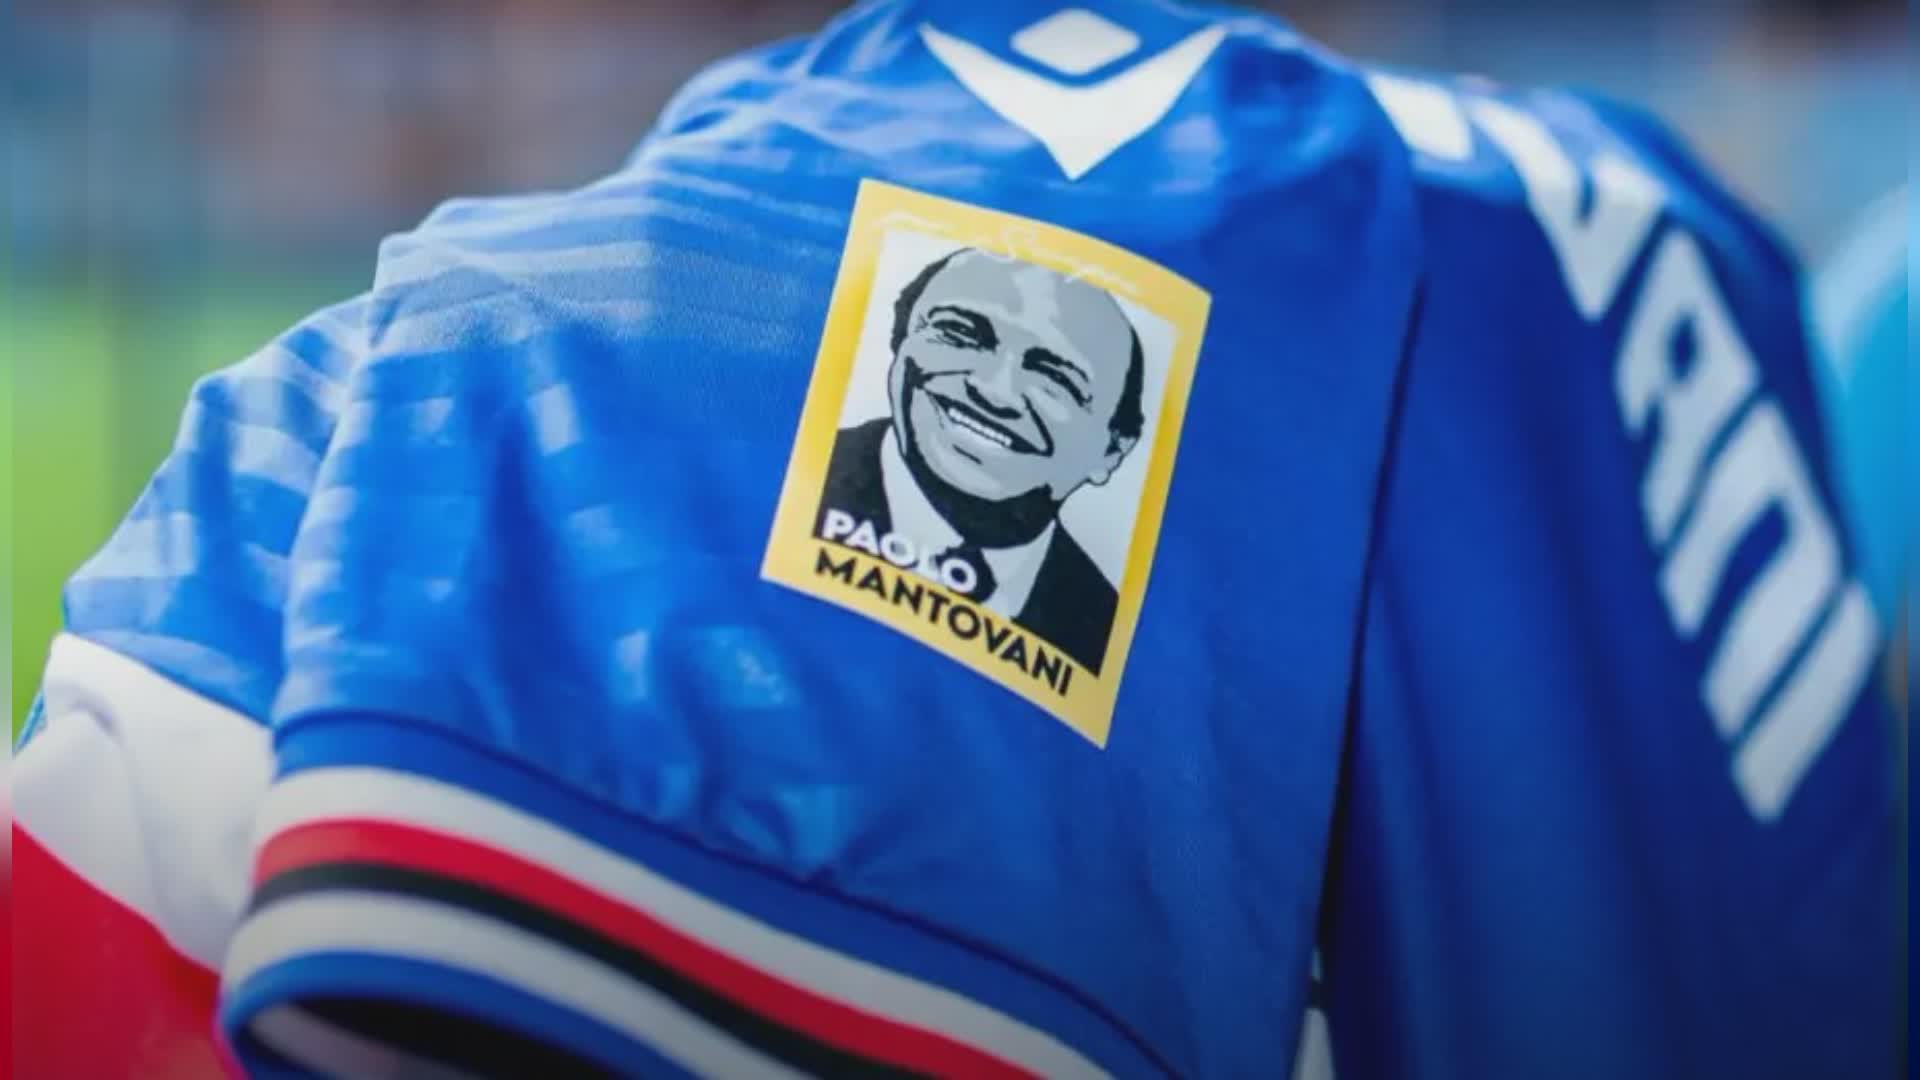 Sampdoria, 30 anni senza Mantovani: maglia speciale contro il Cosenza per ricordare il presidente